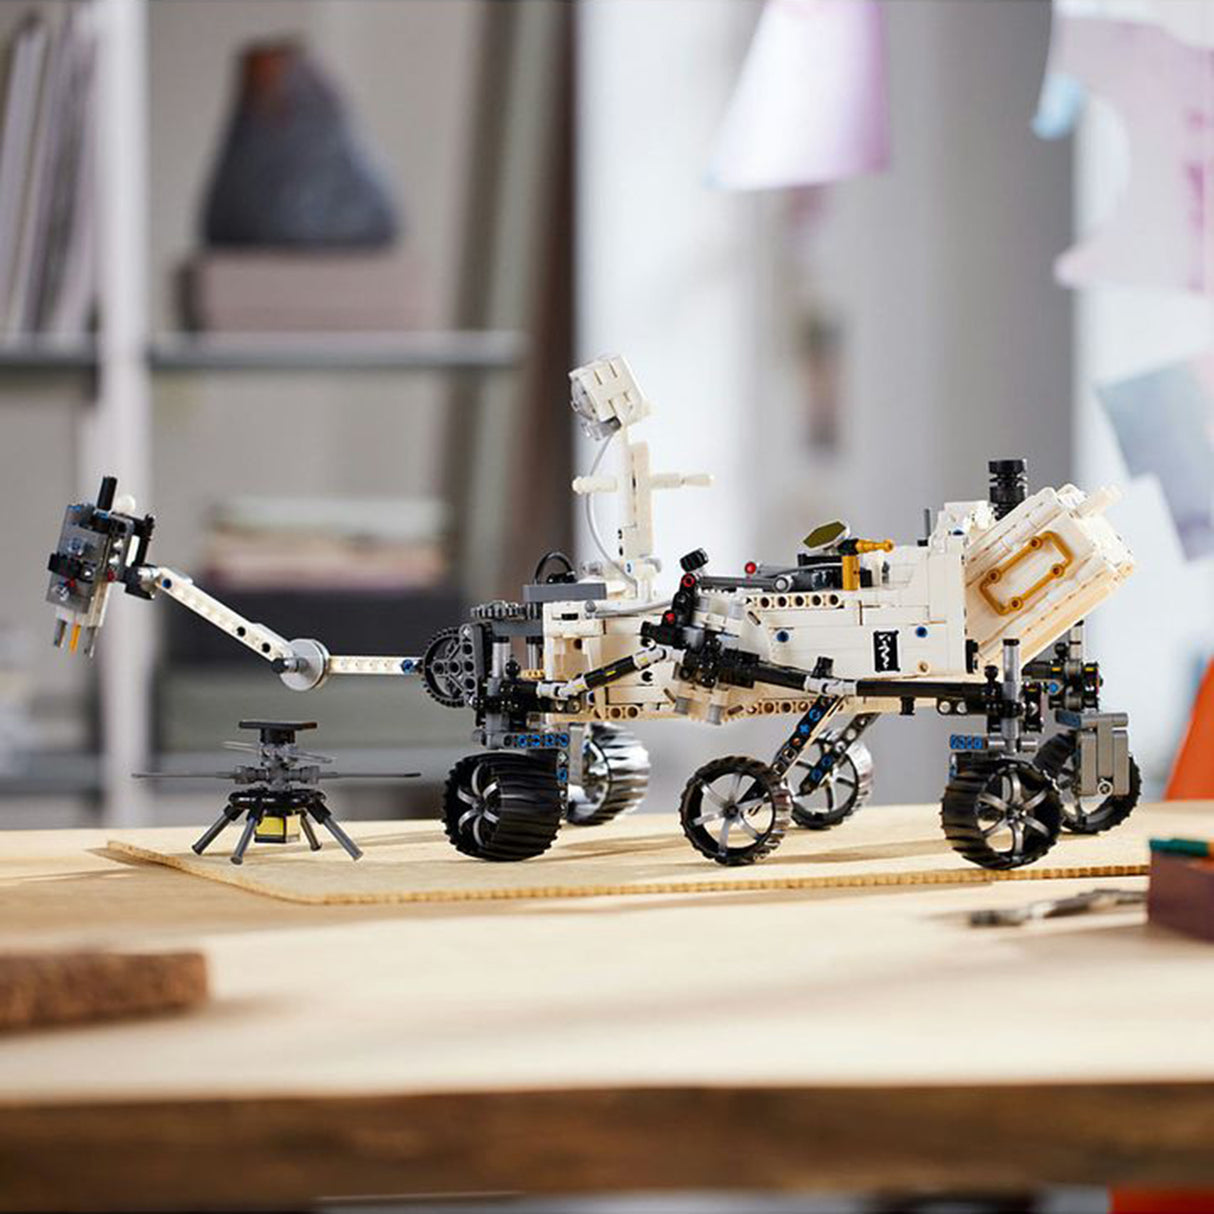 LEGO Technic NASA Mars Rover Perseverance 42158 (1132 pieces)